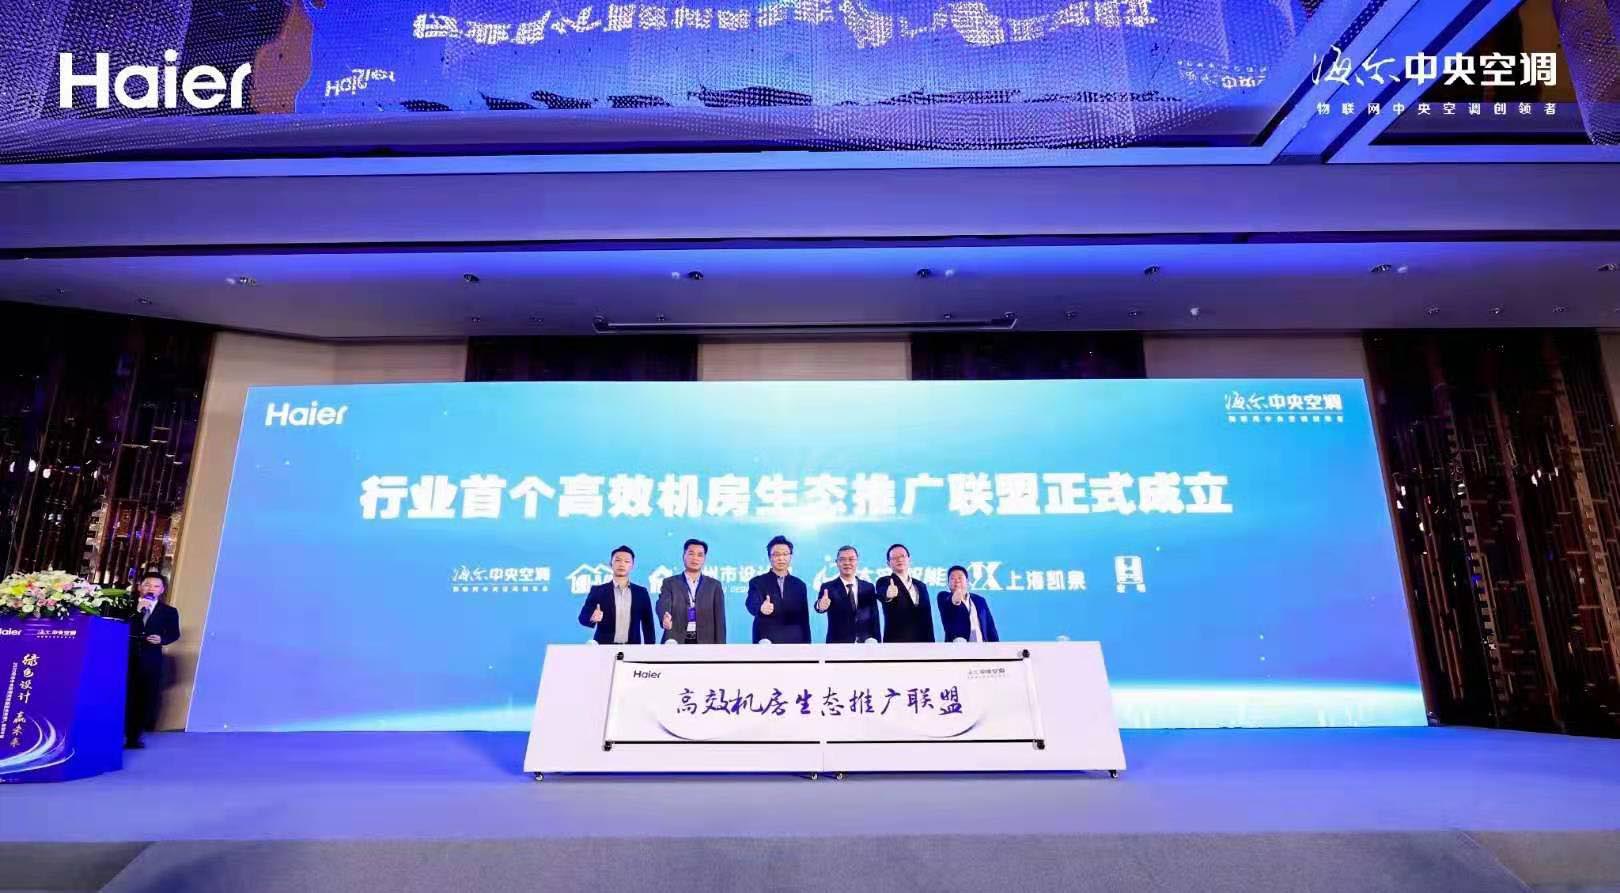 强强联手共建绿色生态 | 上海凯泉成为首个高效机房生态推广联盟k8凯发集团的合作伙伴